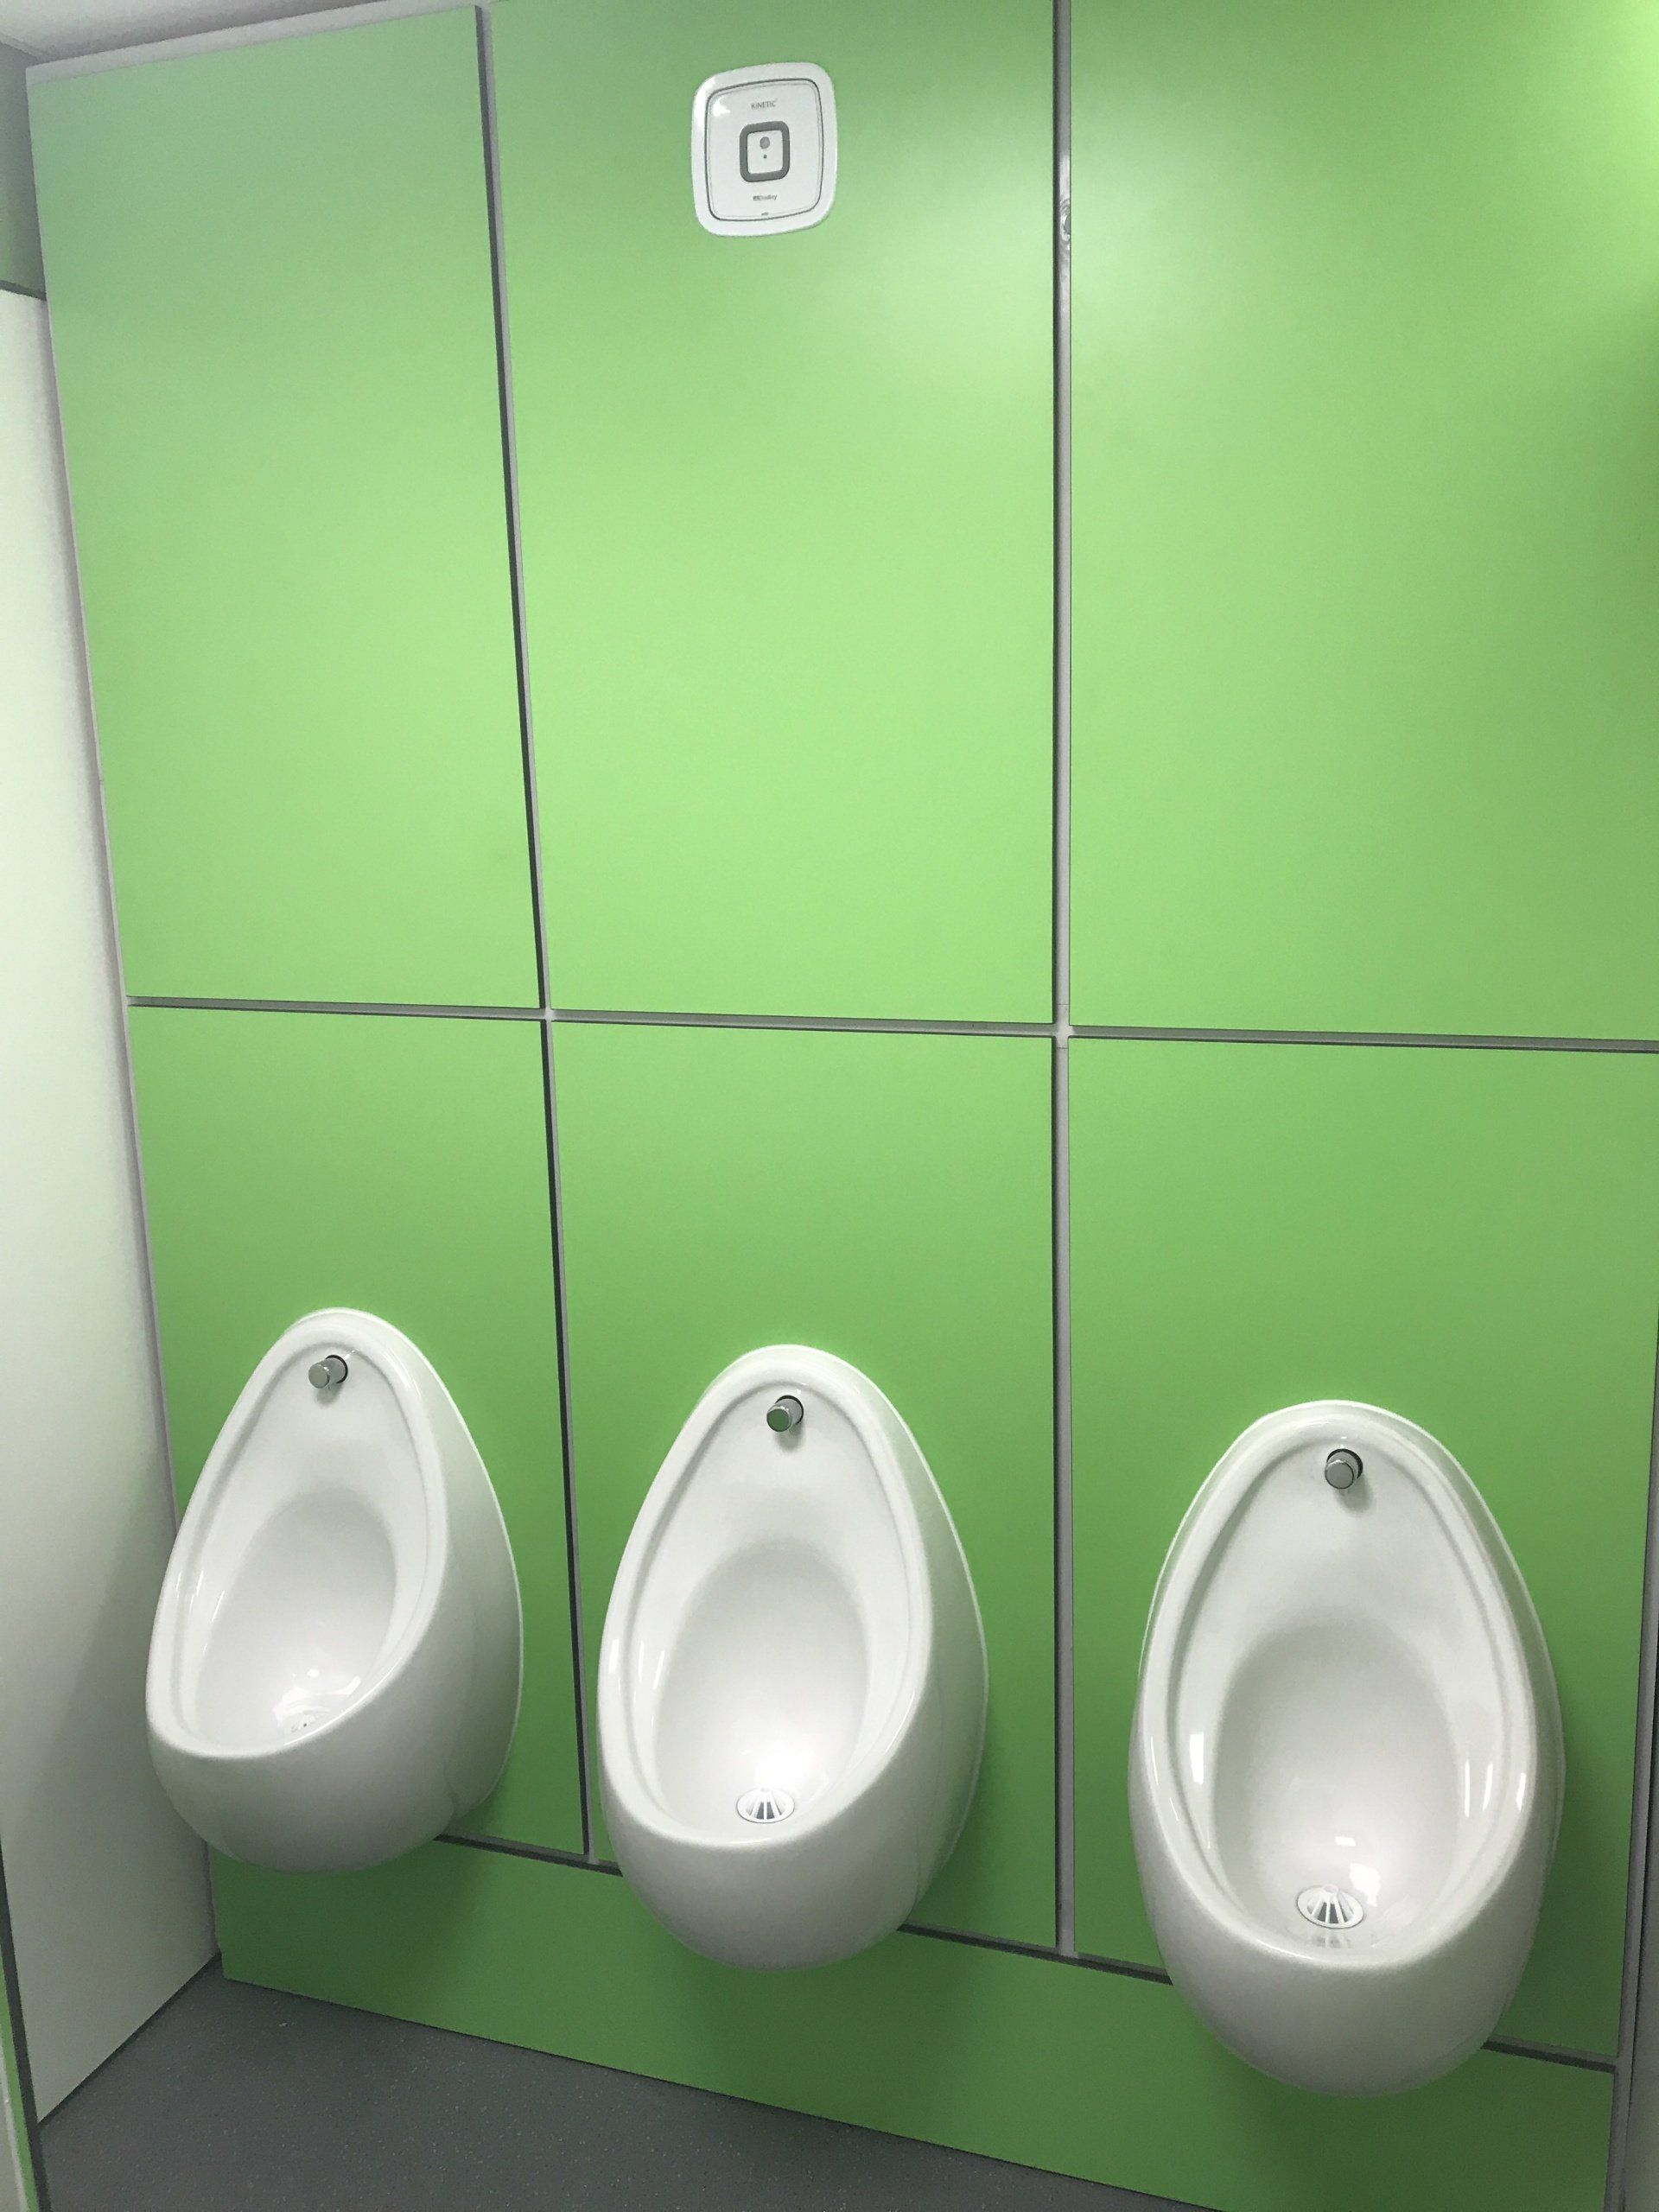 urinals installed